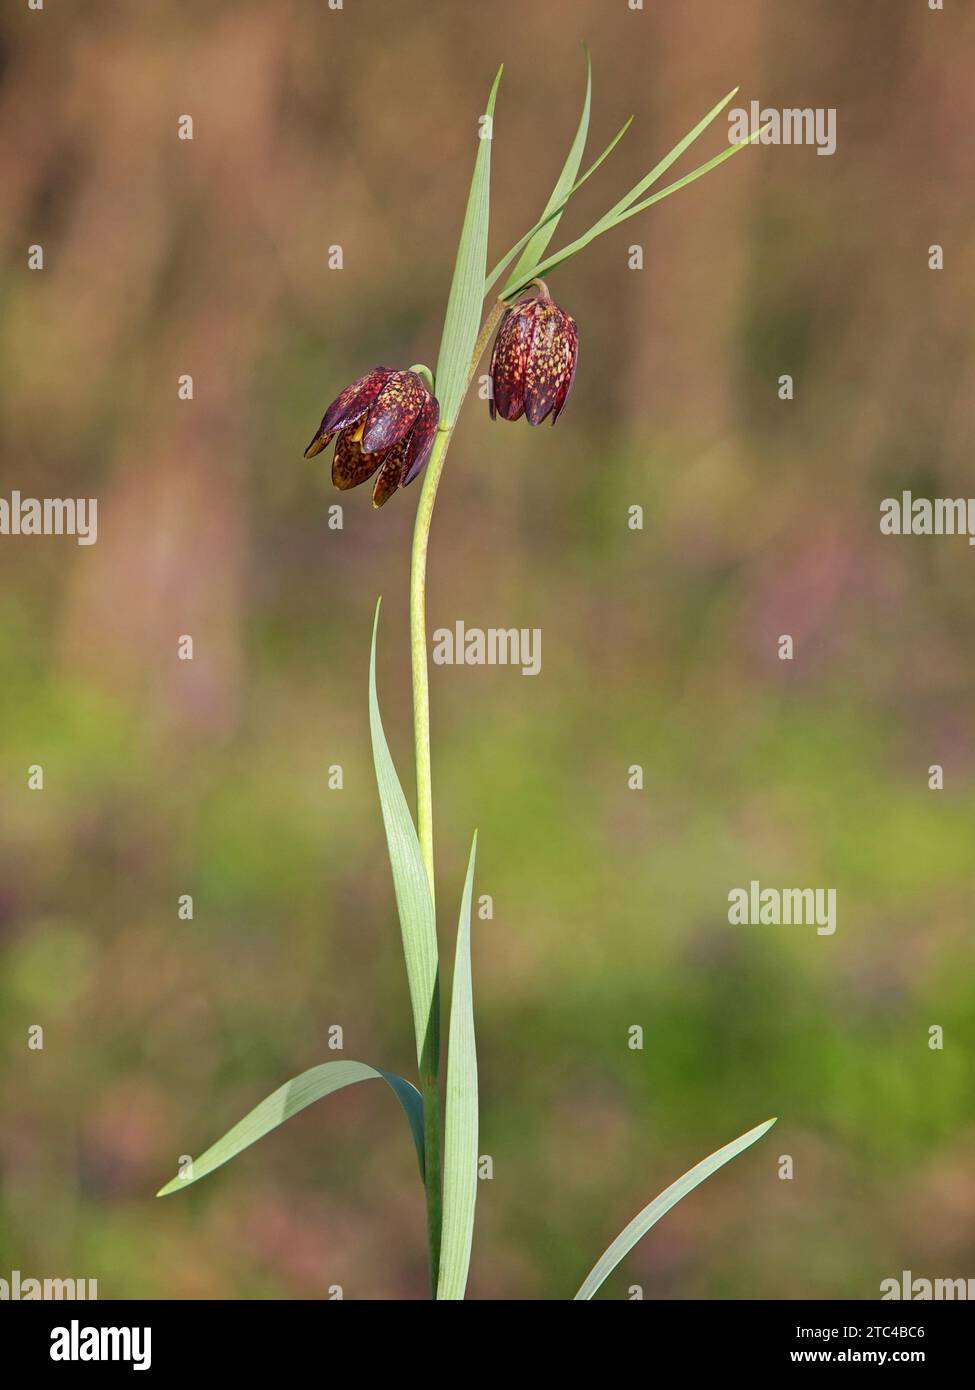 Wild flower of Alpine checkered lily, Fritillaria Montana or orientalis Stock Photo